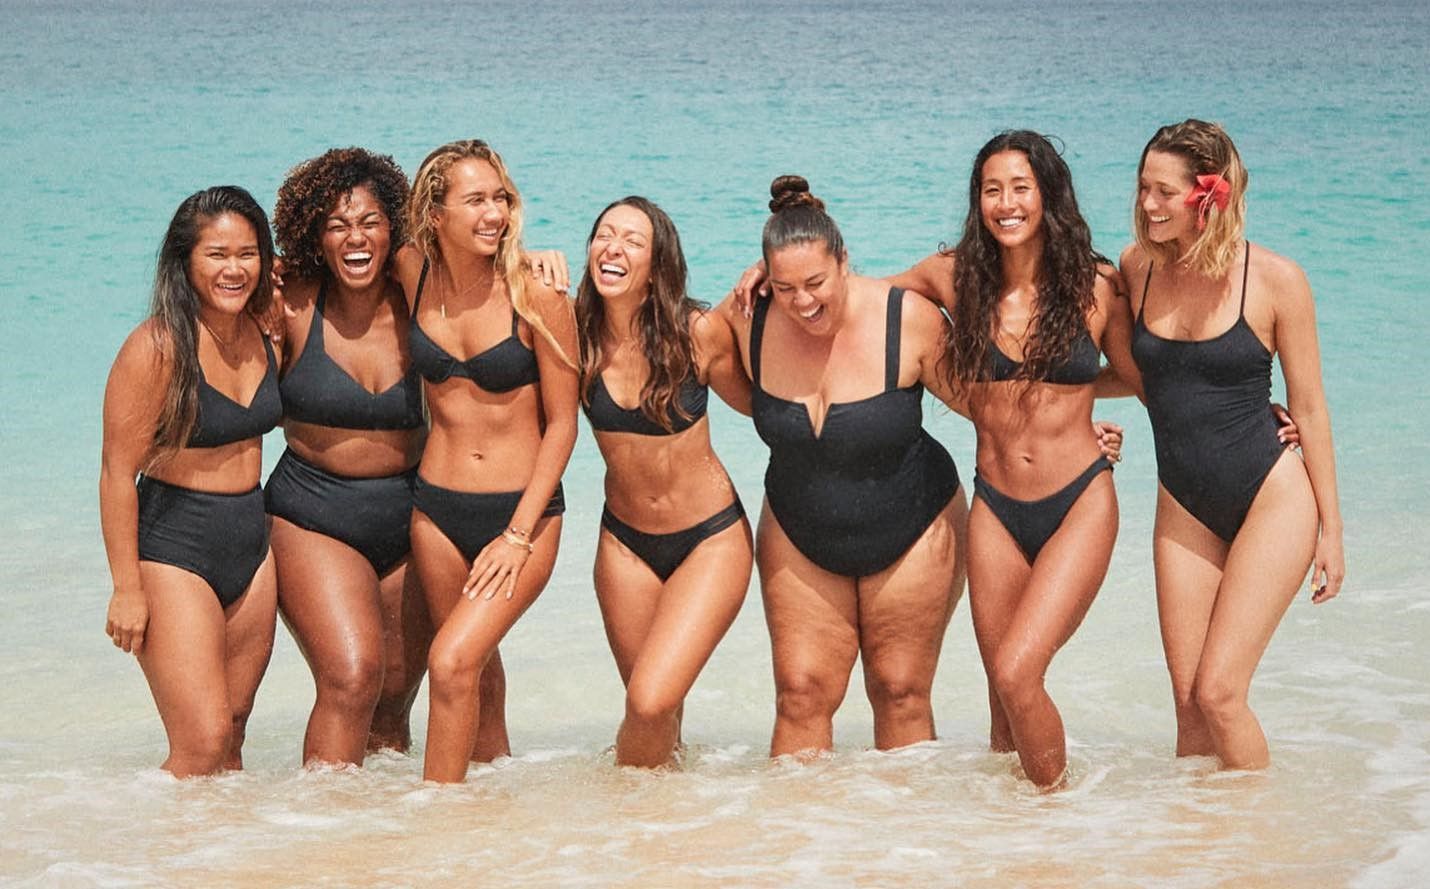 Surfistas posando para la marca Roxy. Acusan Adriana Abenia de 'gordofobia' por comentar un anuncio de biquinis y decir que es "apología de la obesidad"